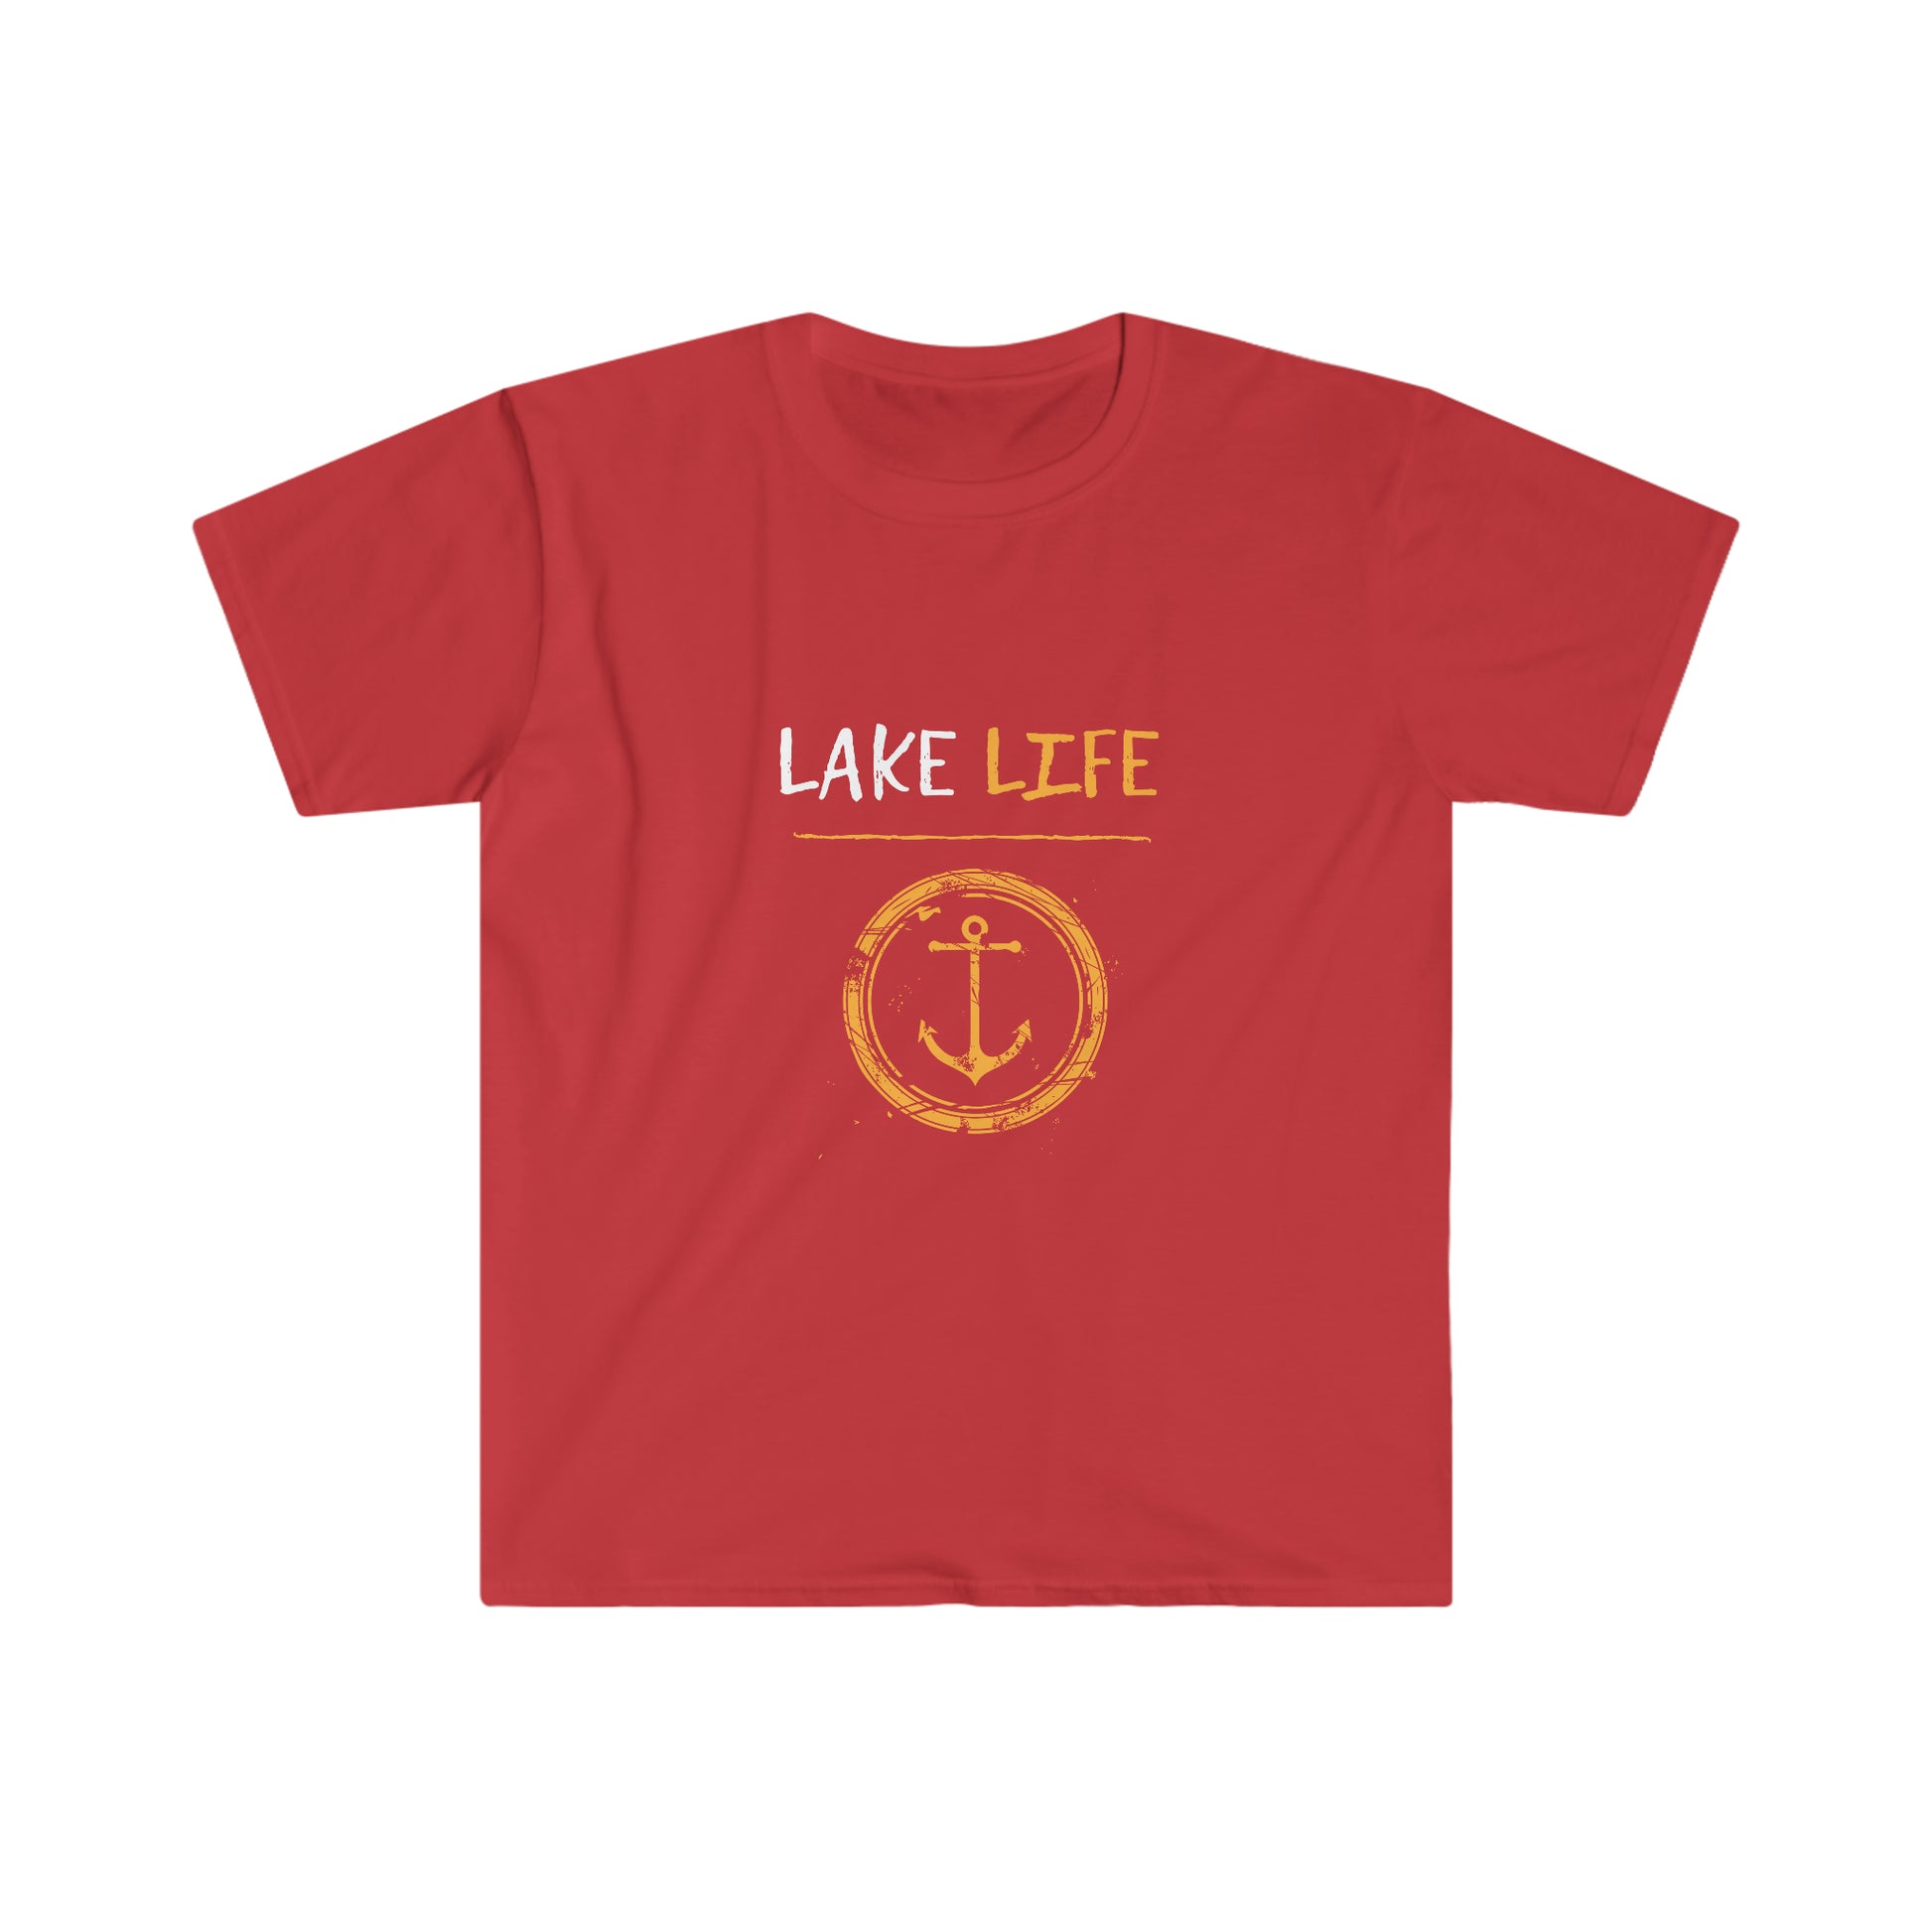 Lake Life - Anchor - Urban Camper